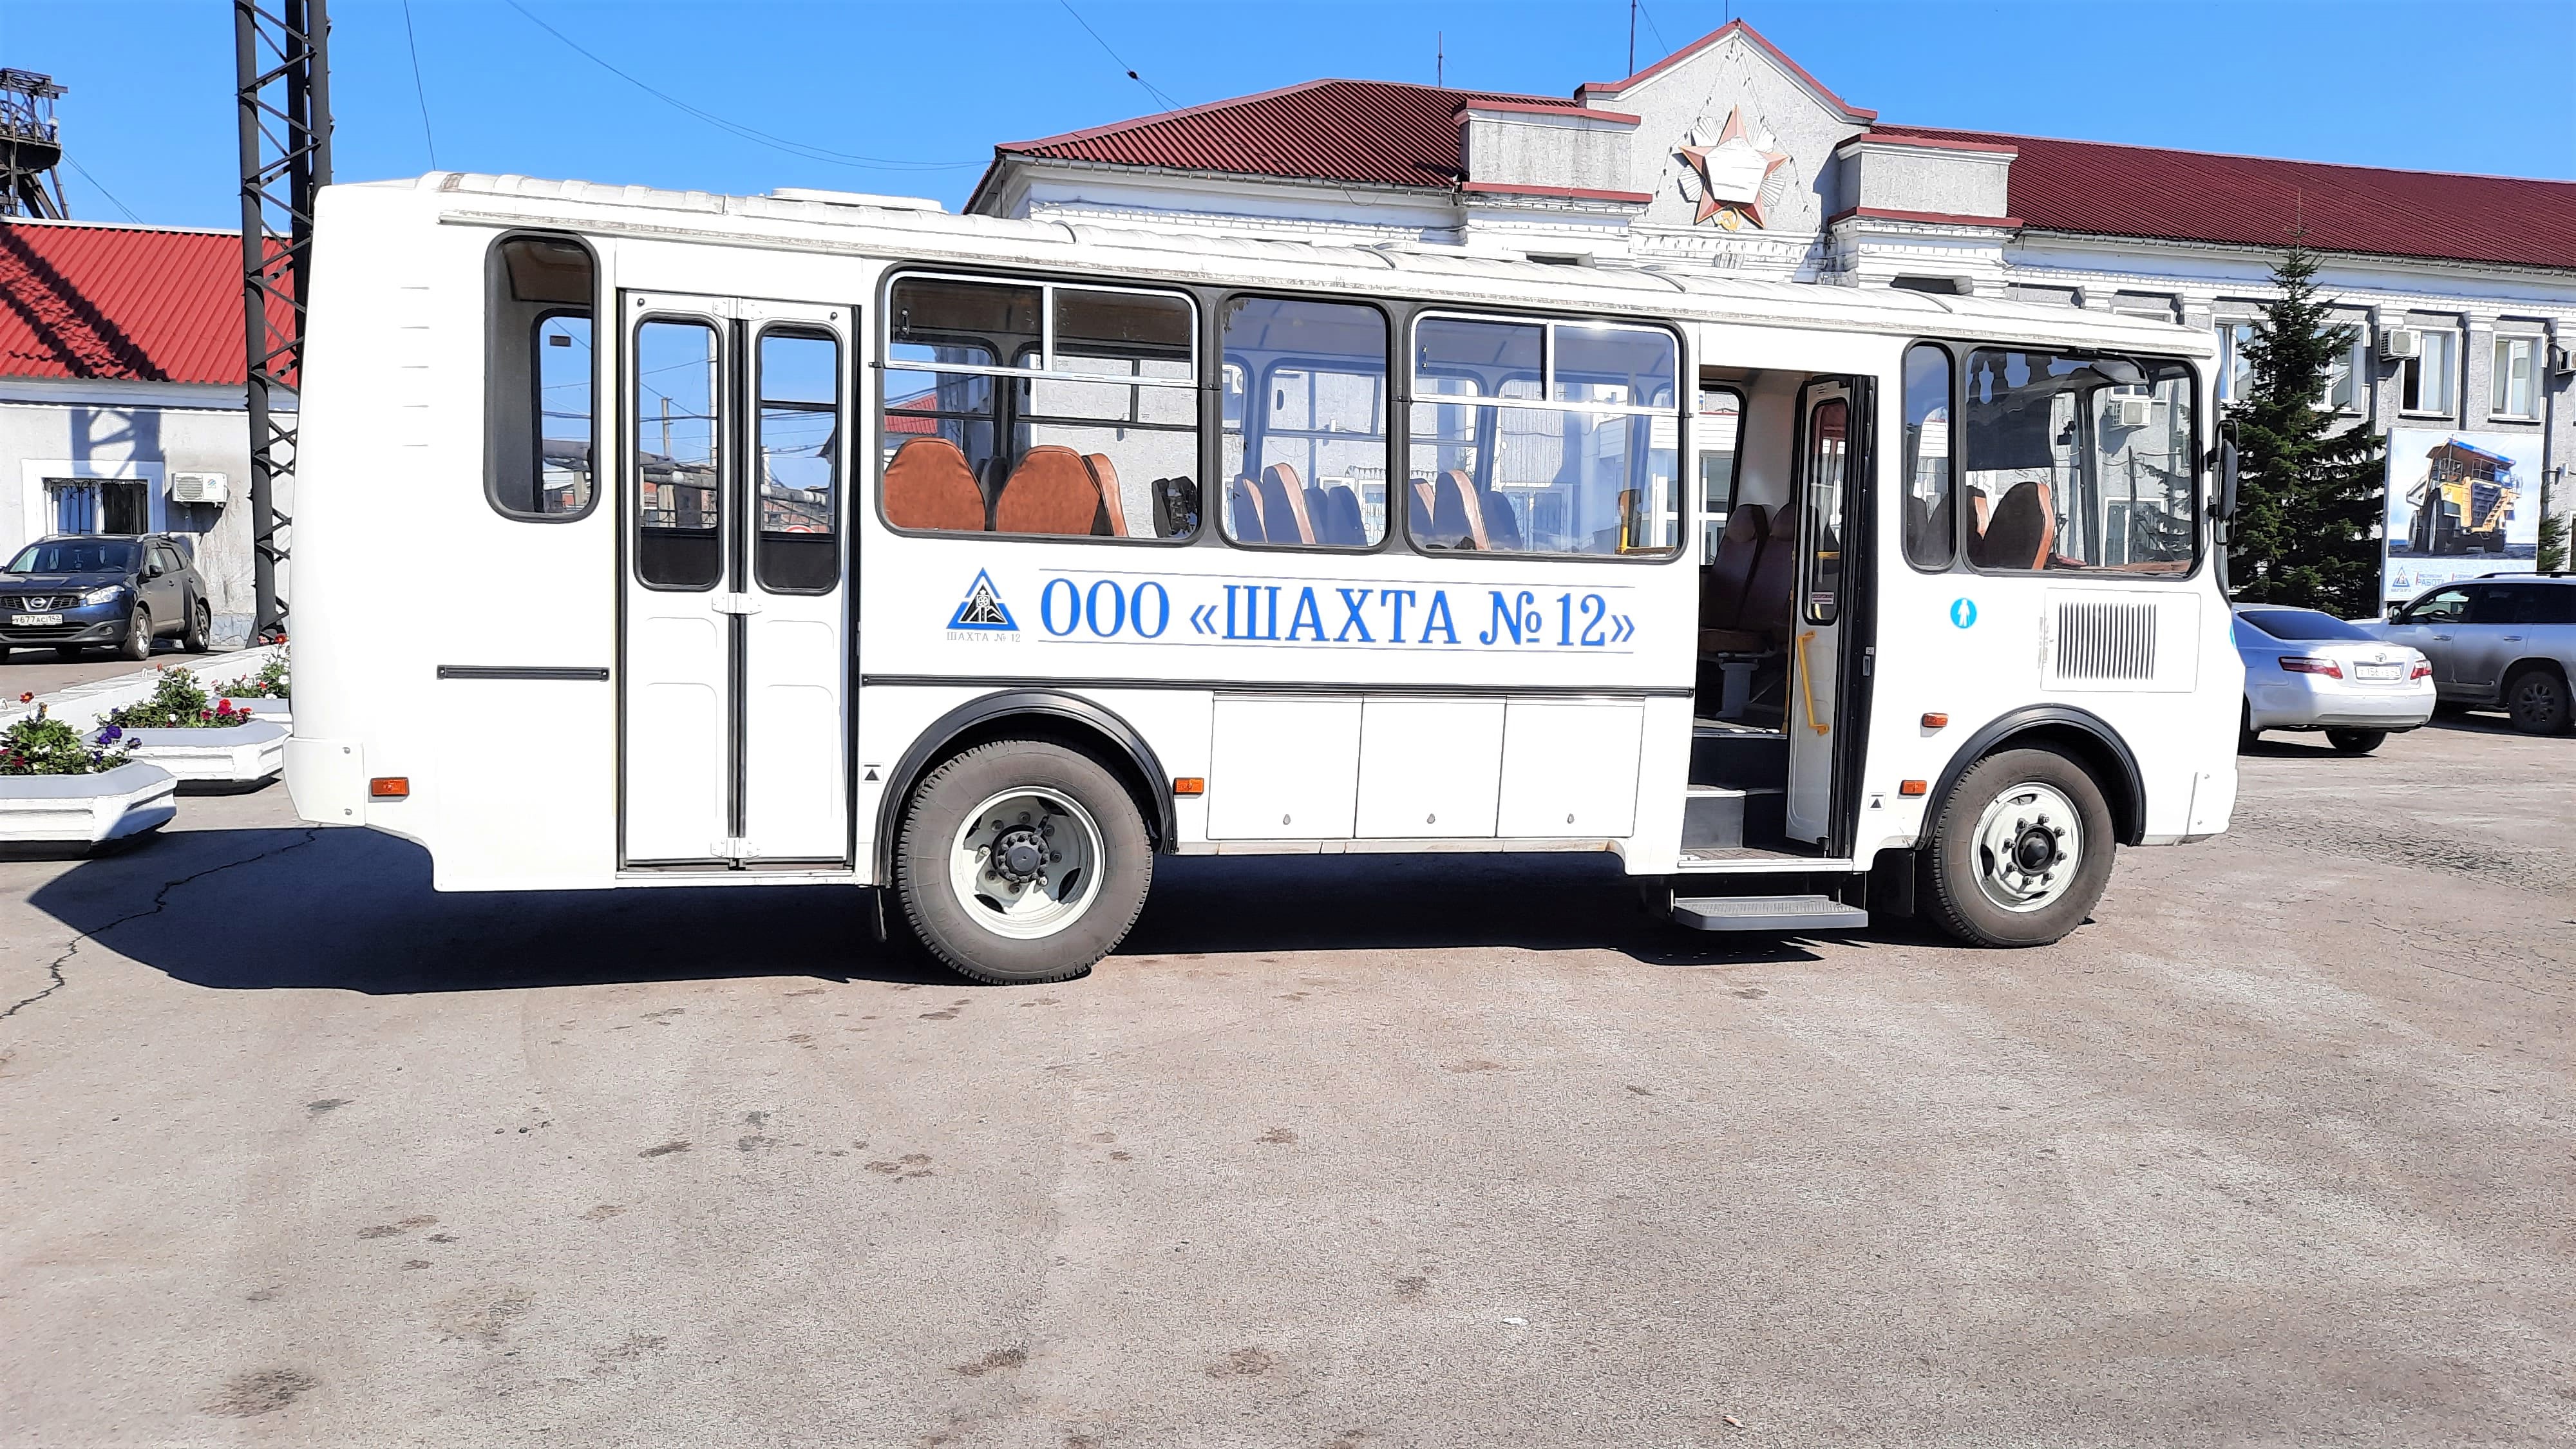 Новые автобусы для перевозки рабочих поступили на Шахту №12. Стройсервис